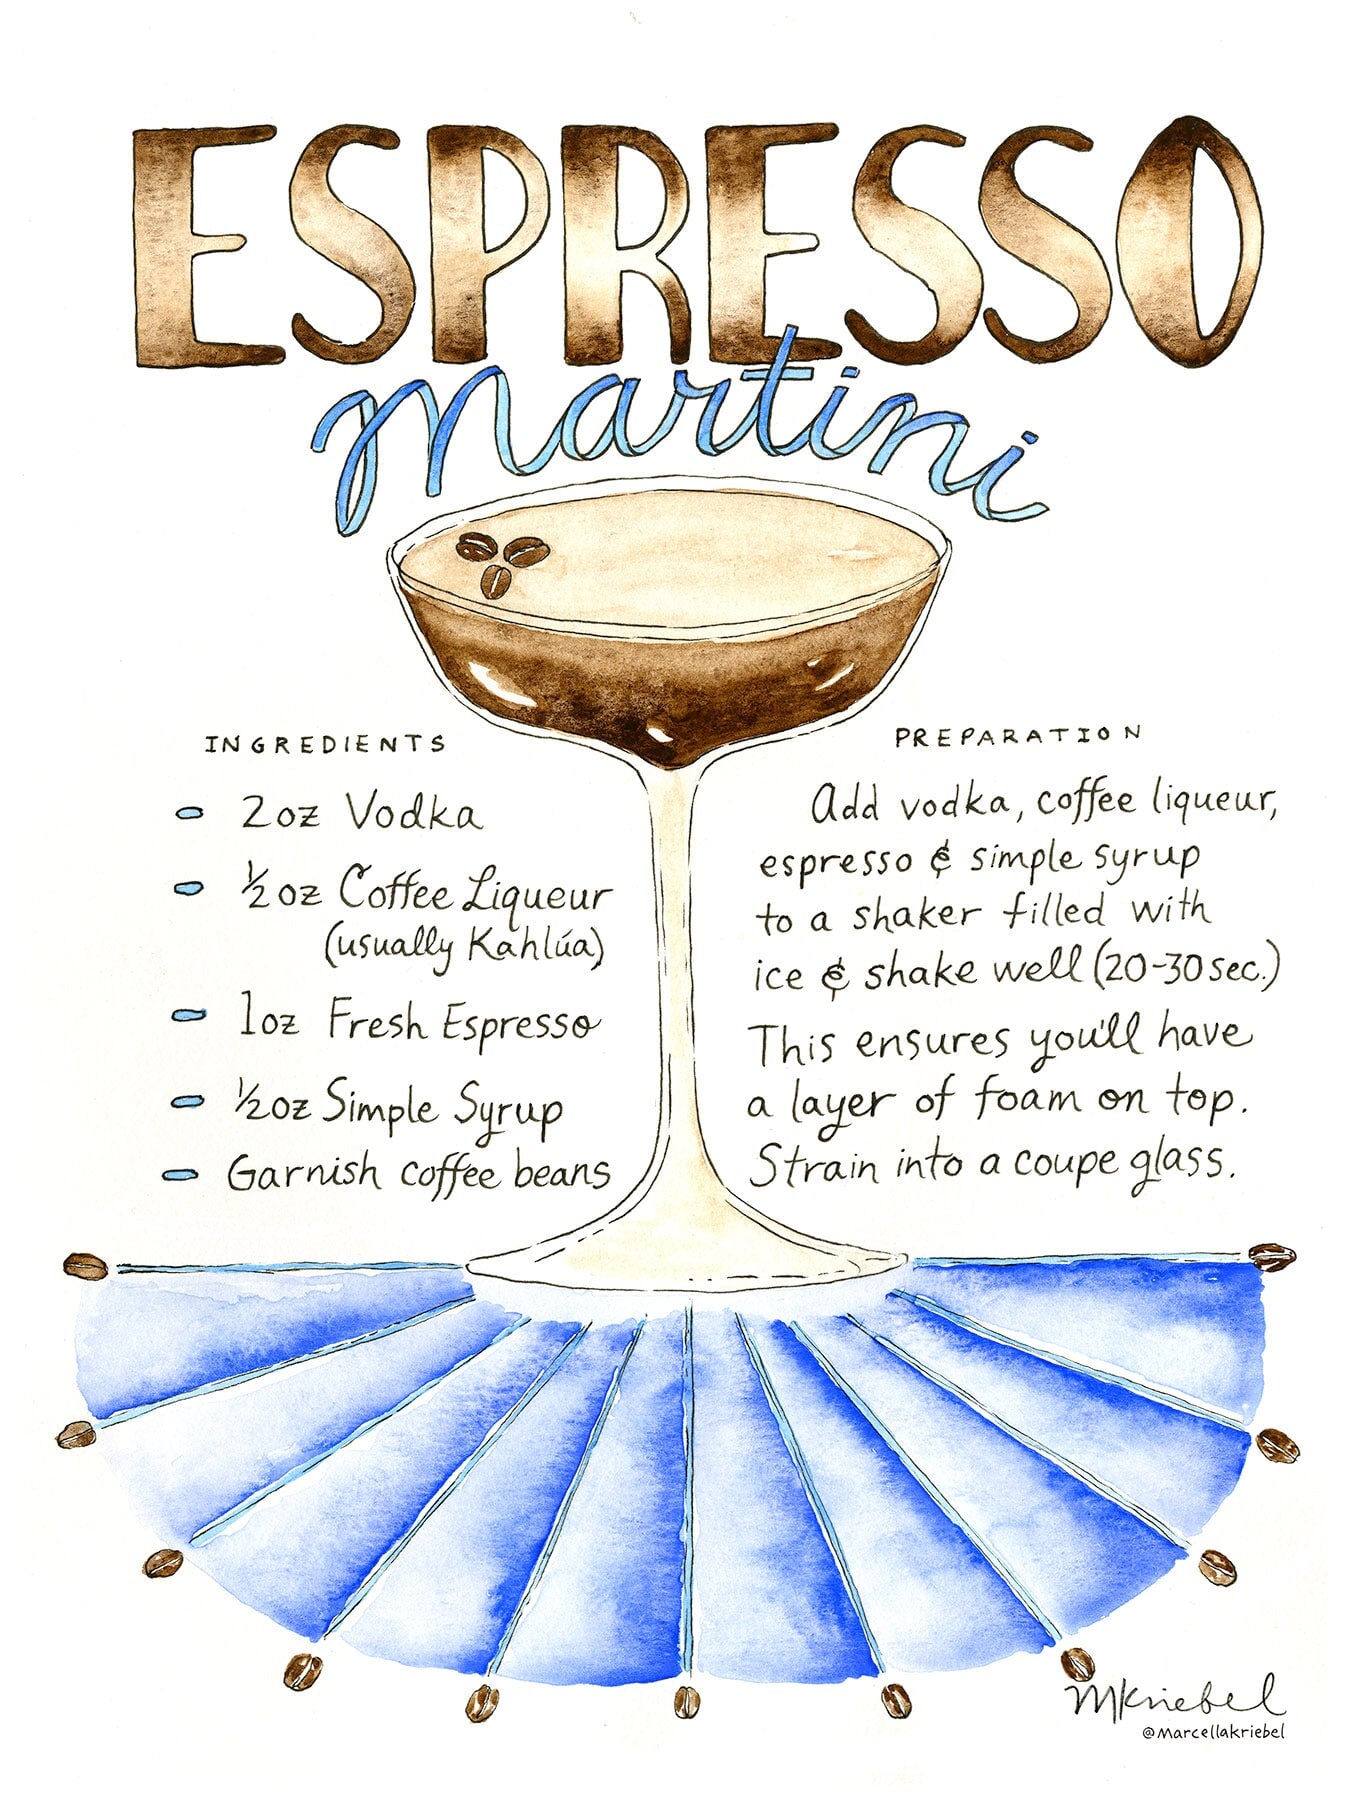 Espresso martini: cocktail recipe